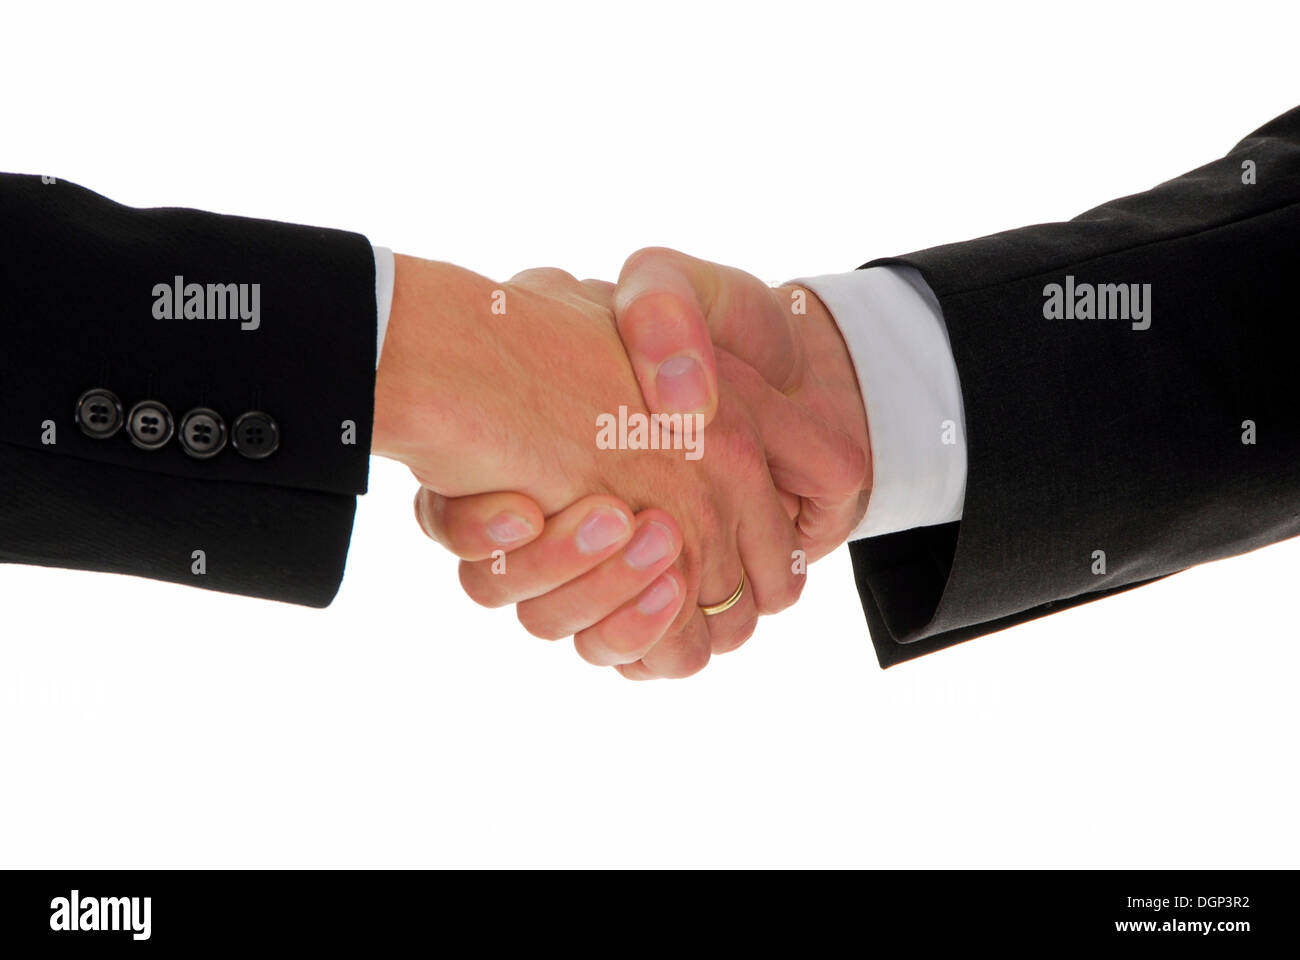 Deux hommes se serrant la main, image symbolique pour sceller une transaction d'affaires Banque D'Images